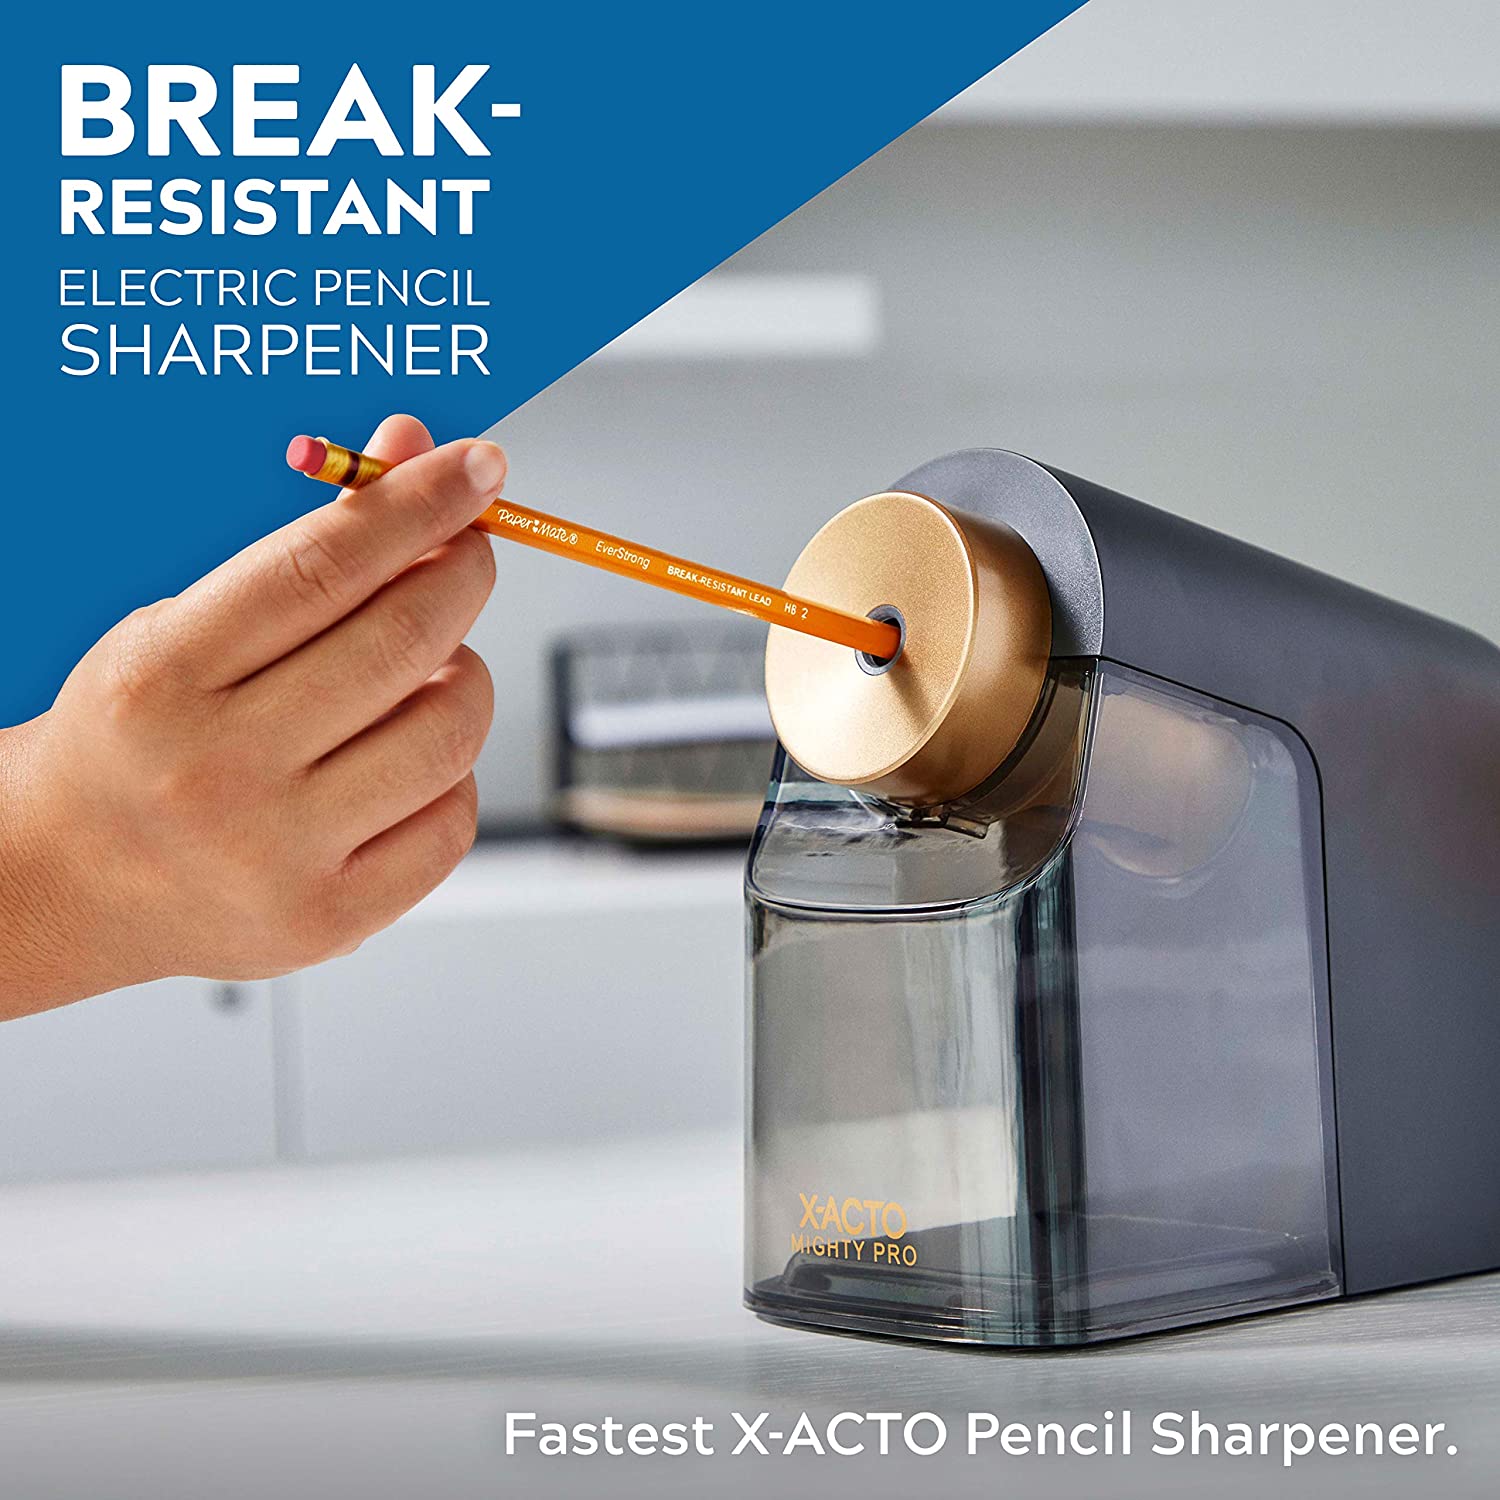 X-ACTO Pencil Sharpener feature 1